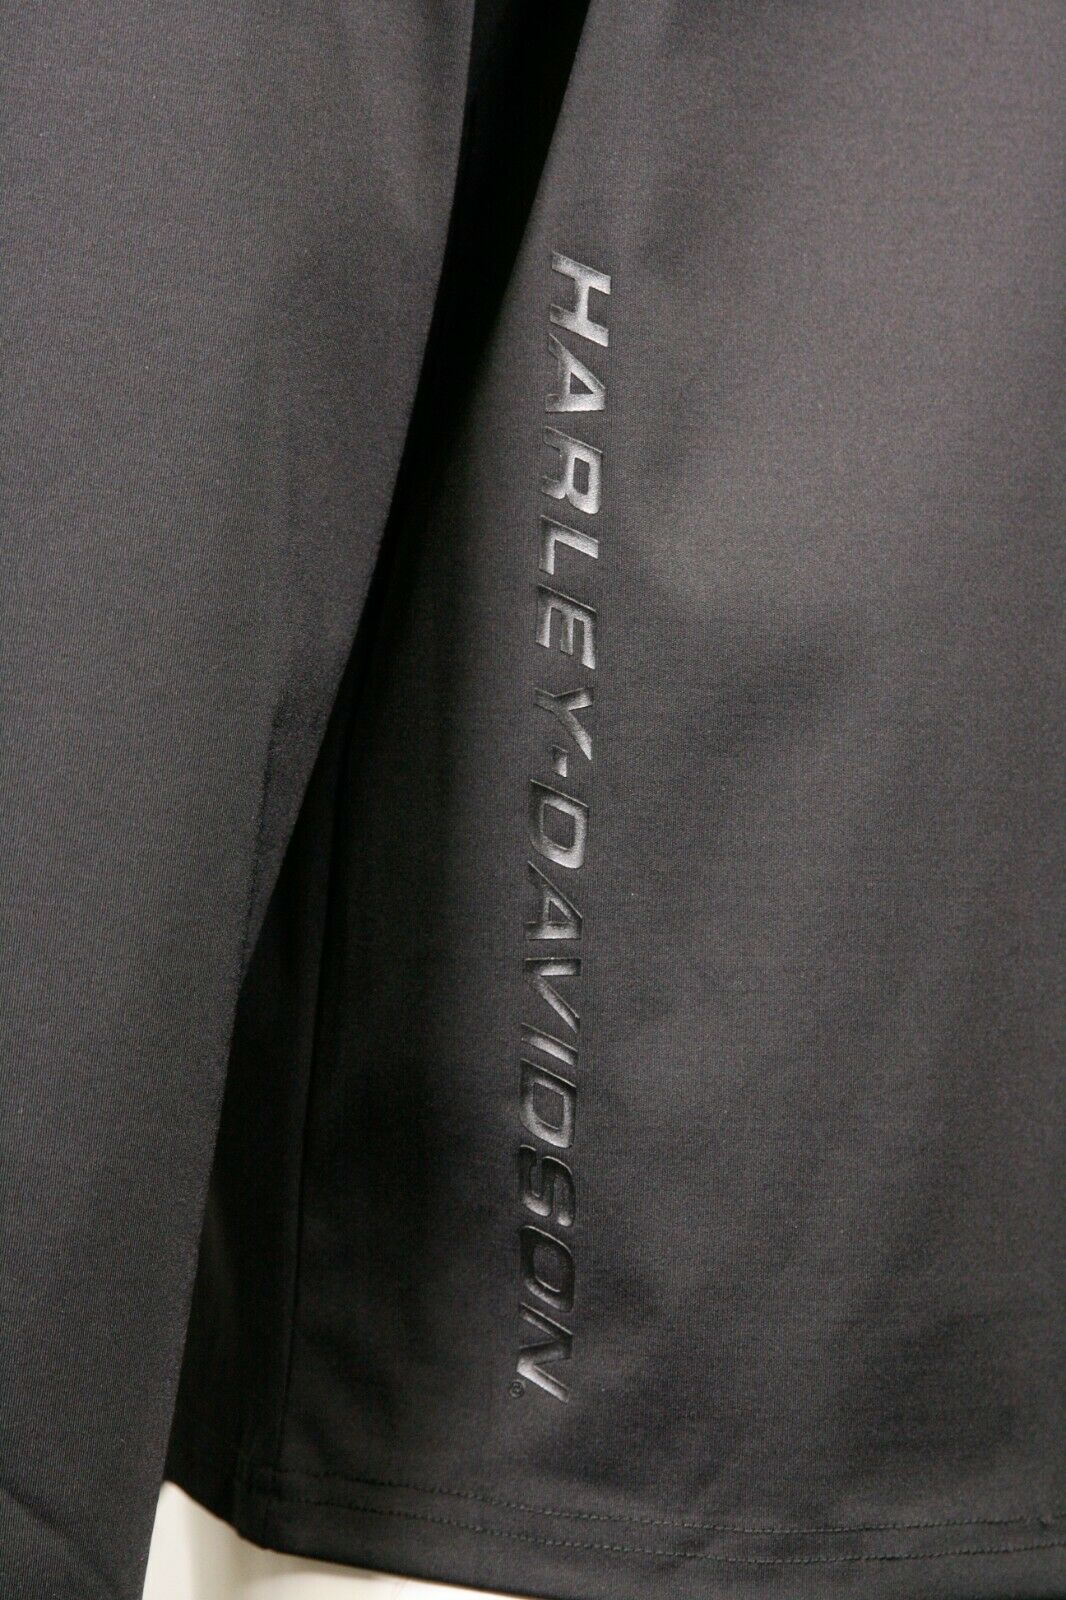 Harley-Davidson Men's Black Track 1/3 Zip L/S T-Shirt